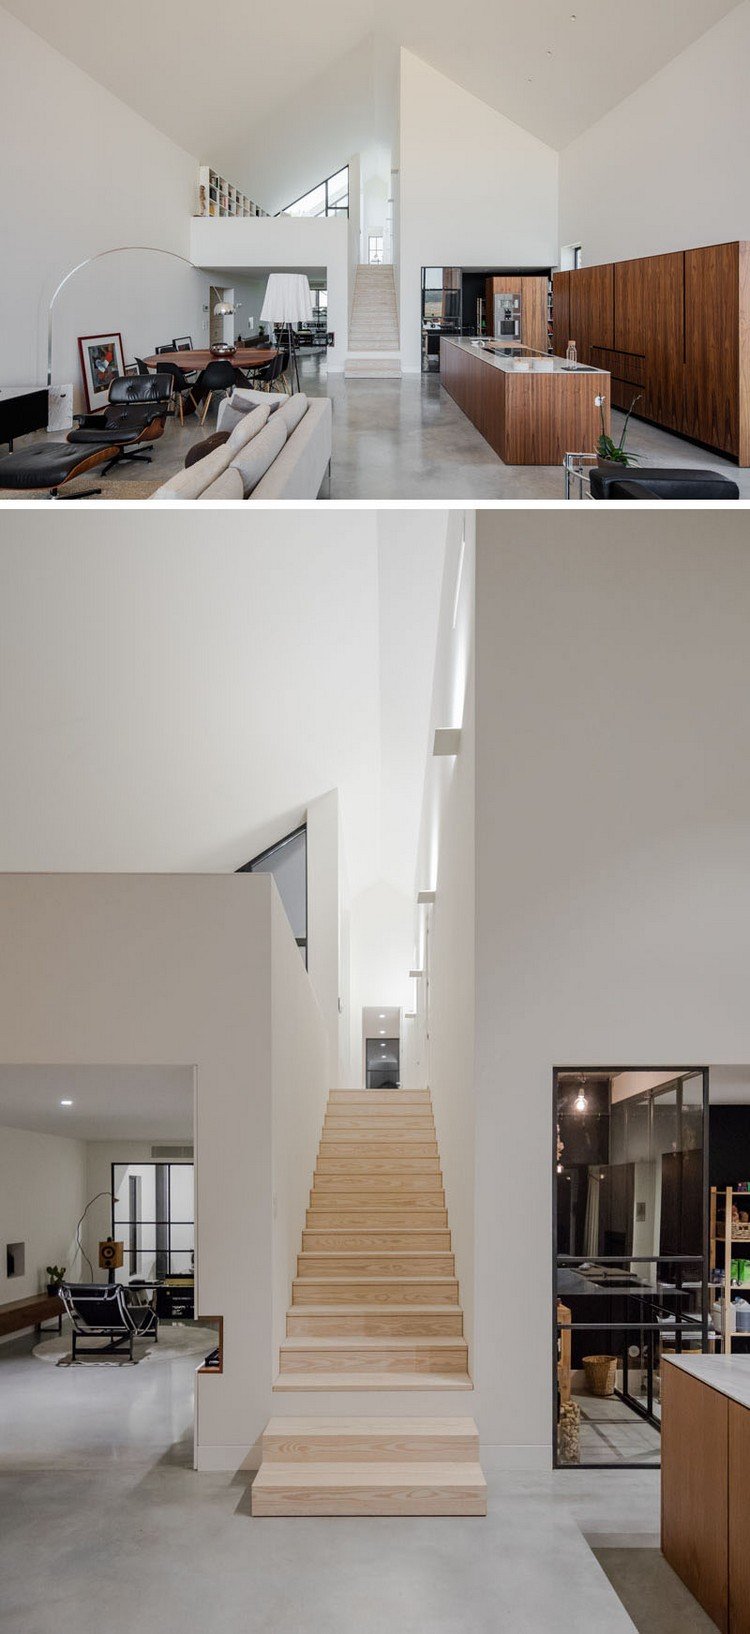 fenêtre sur mesure idée aménagement intérieur design épuré blanc mobilier contemporain escalier bois